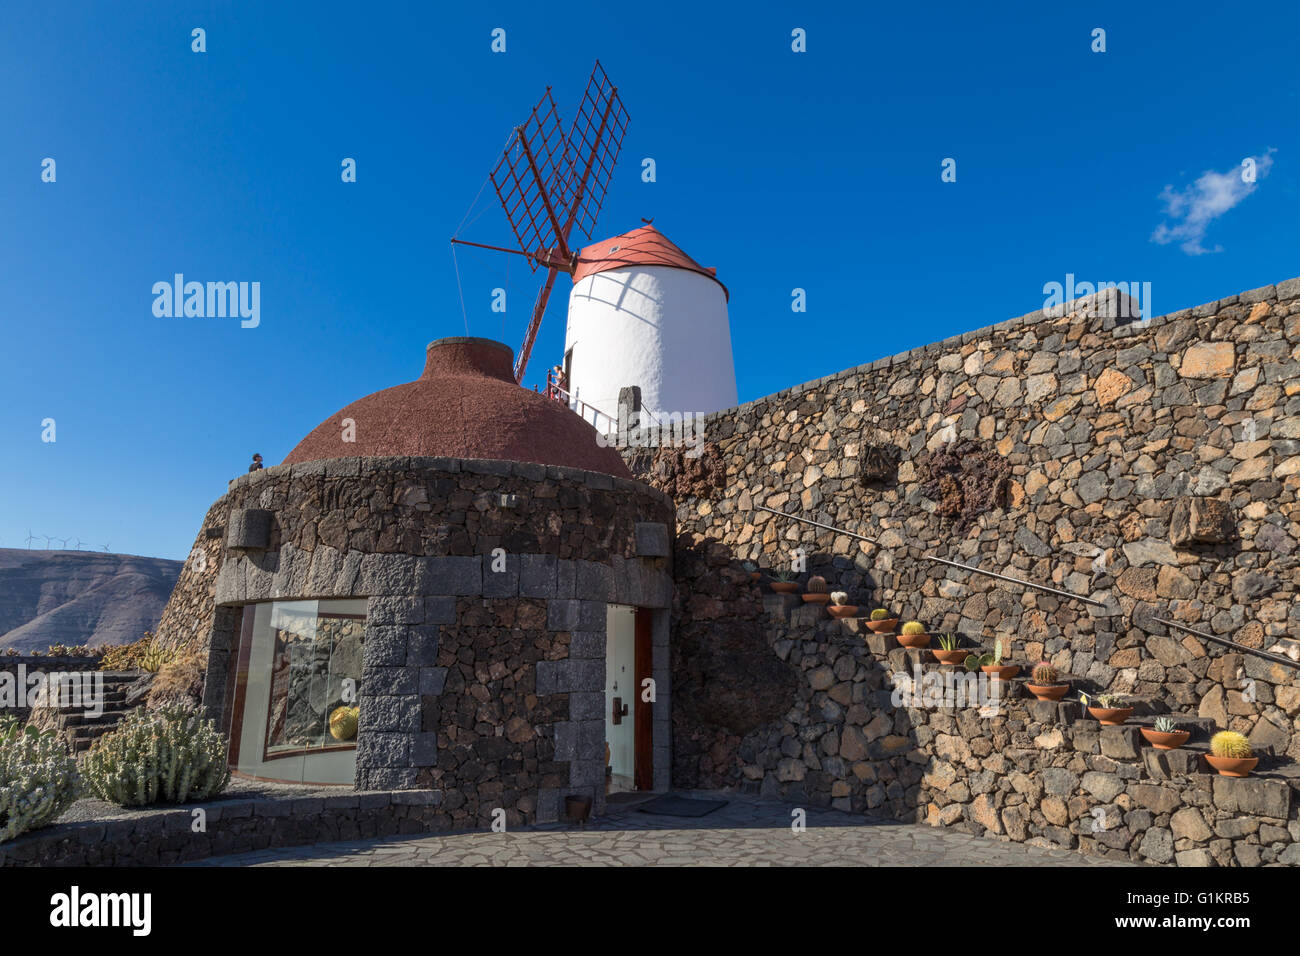 Entrée de l'escalier de l'Lanzarote jardin de cactus, dominé par un moulin à vent. Conçue par César Manrique. Banque D'Images